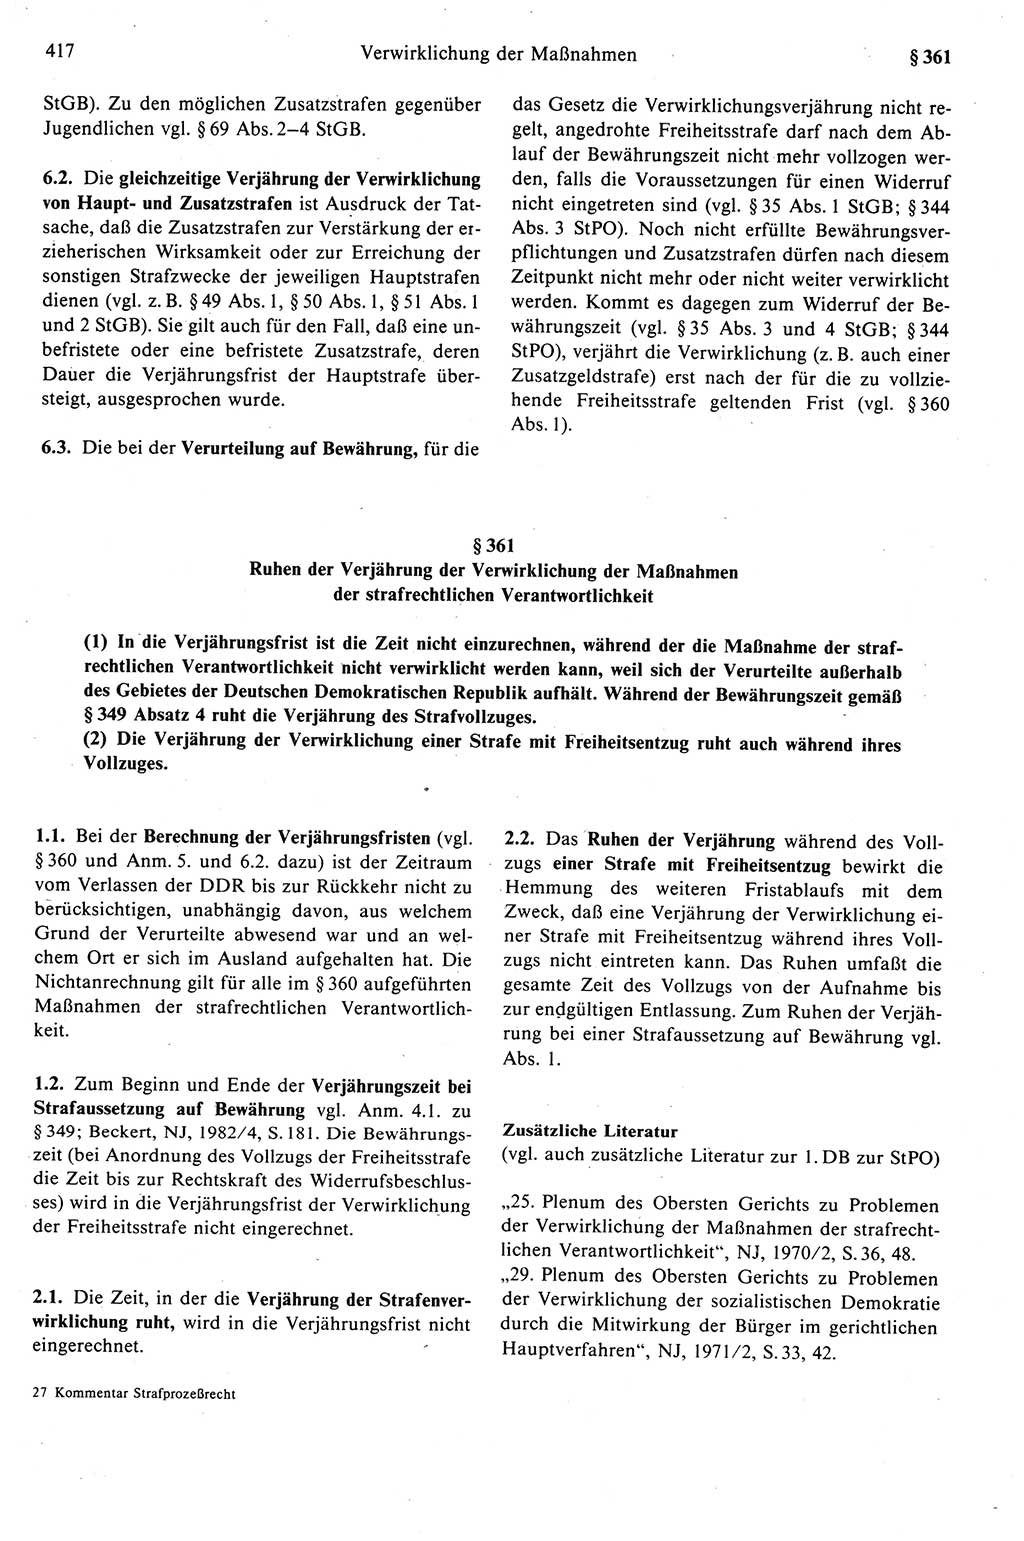 Strafprozeßrecht der DDR (Deutsche Demokratische Republik), Kommentar zur Strafprozeßordnung (StPO) 1989, Seite 417 (Strafprozeßr. DDR Komm. StPO 1989, S. 417)